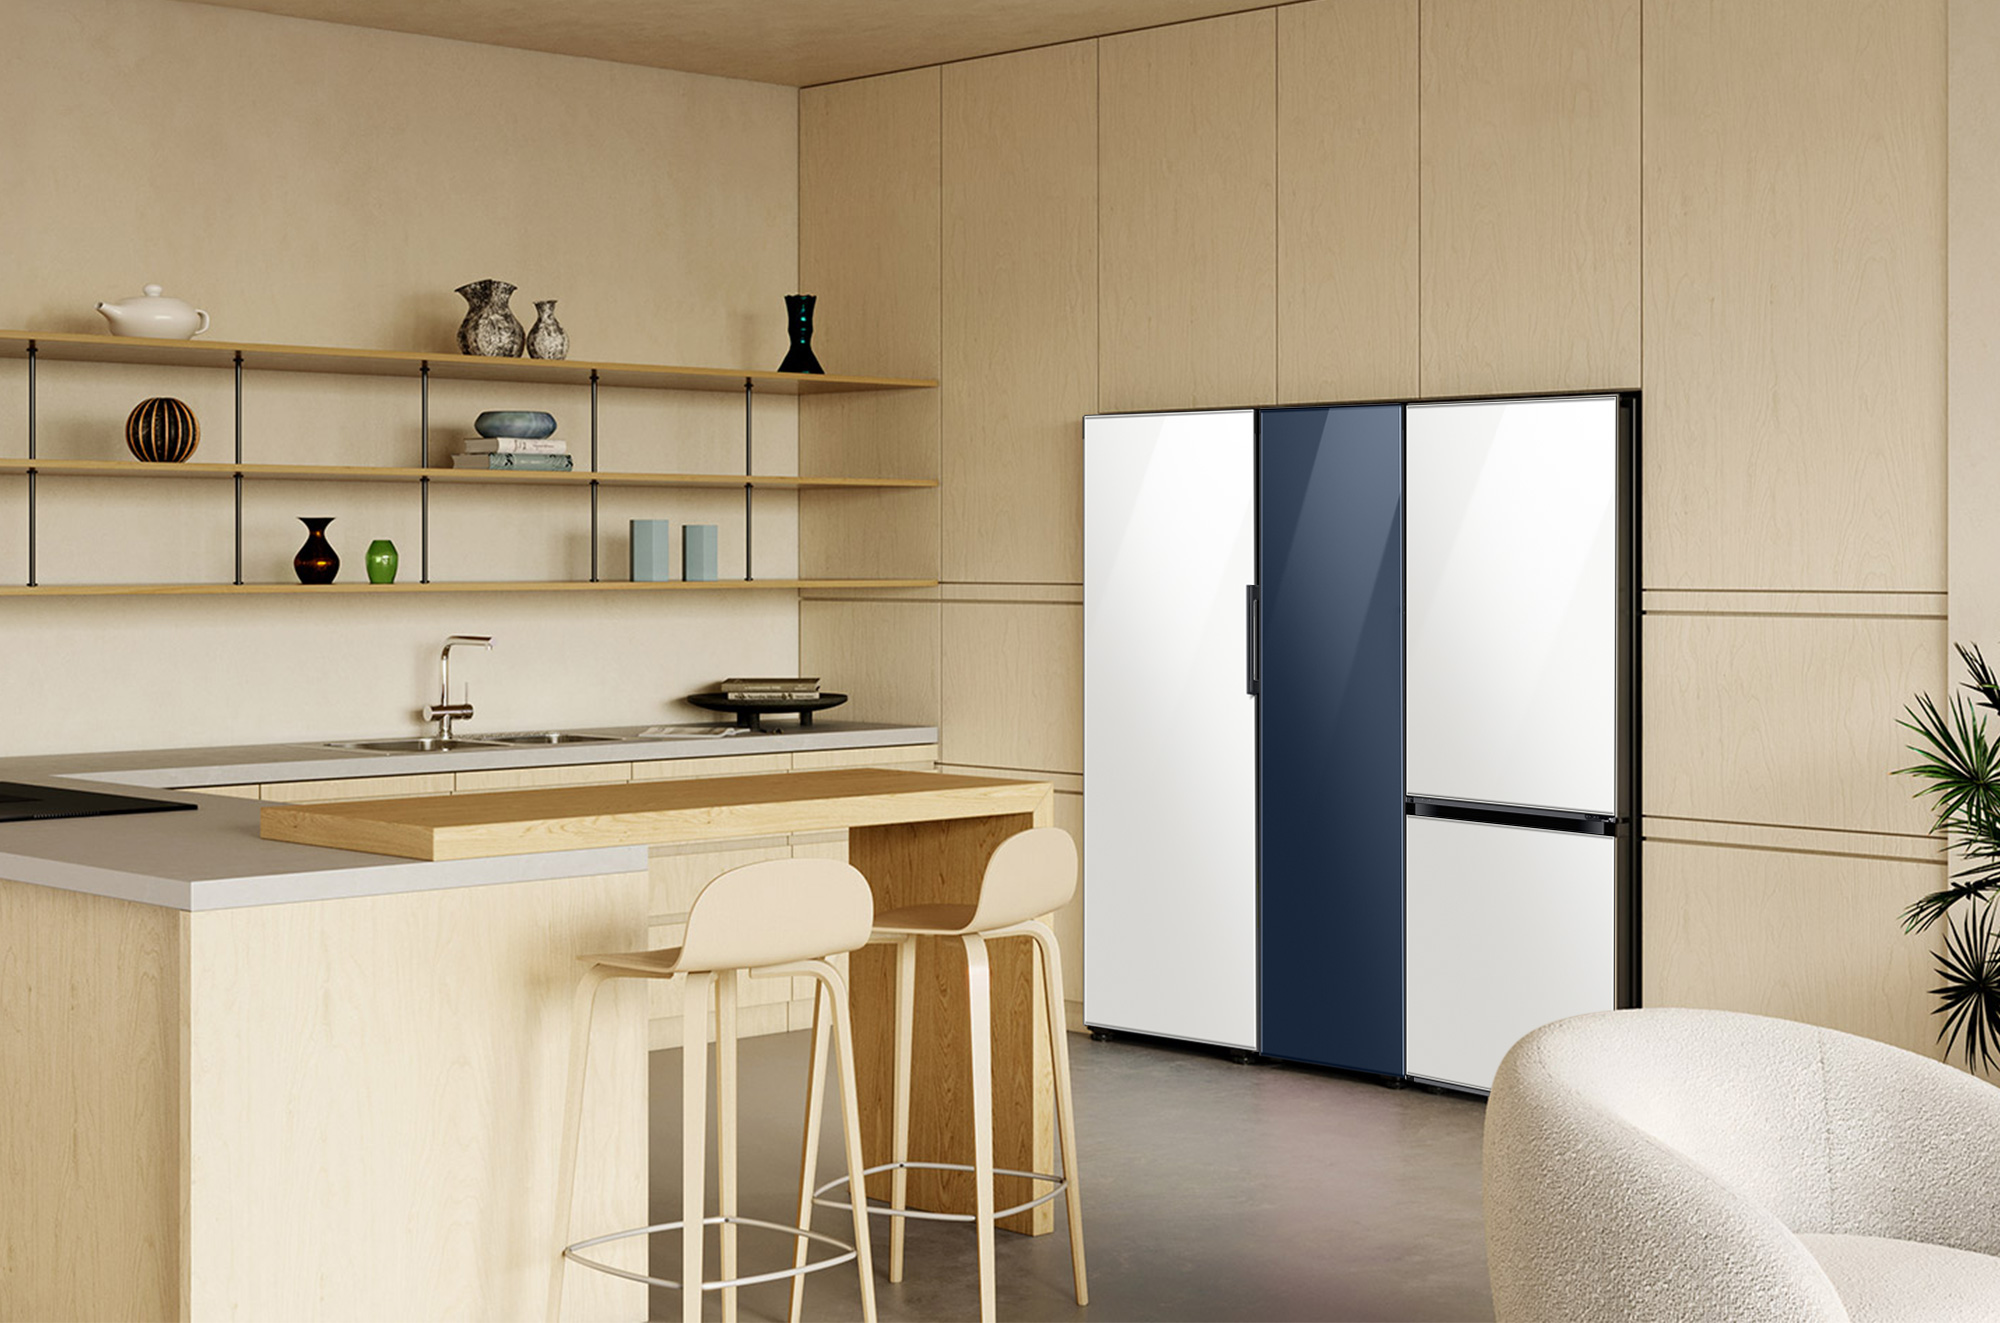 Samsung presenta su nueva línea de refrigeradoras Bespoke 2022 al mercado peruano